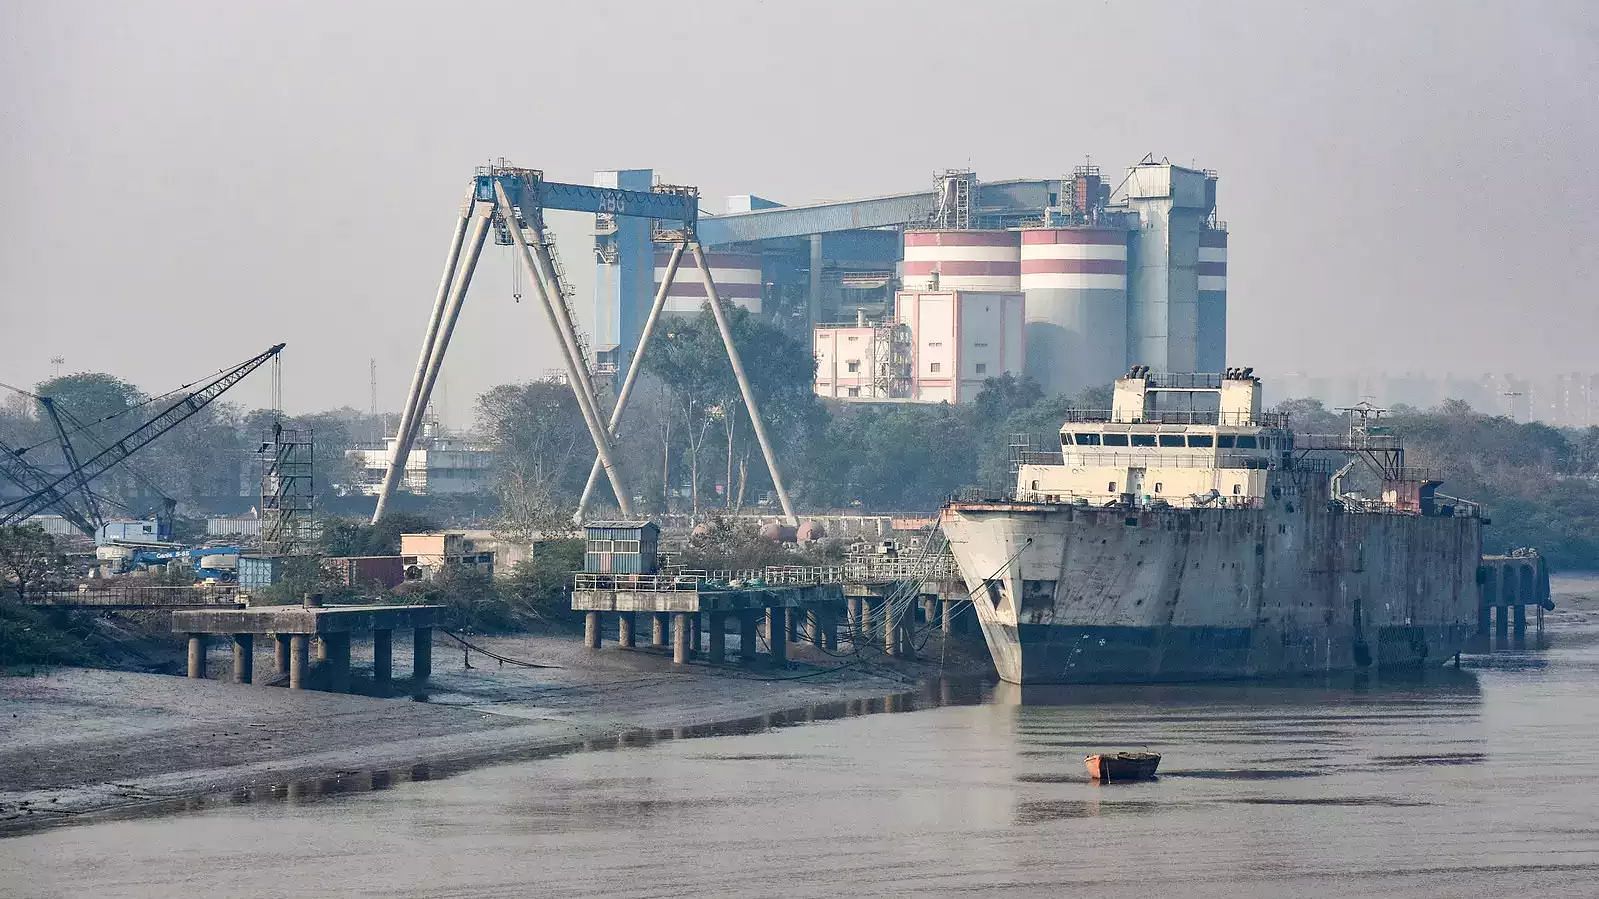 <div class="paragraphs"><p>ABG Shipyard in Mumbai</p></div>